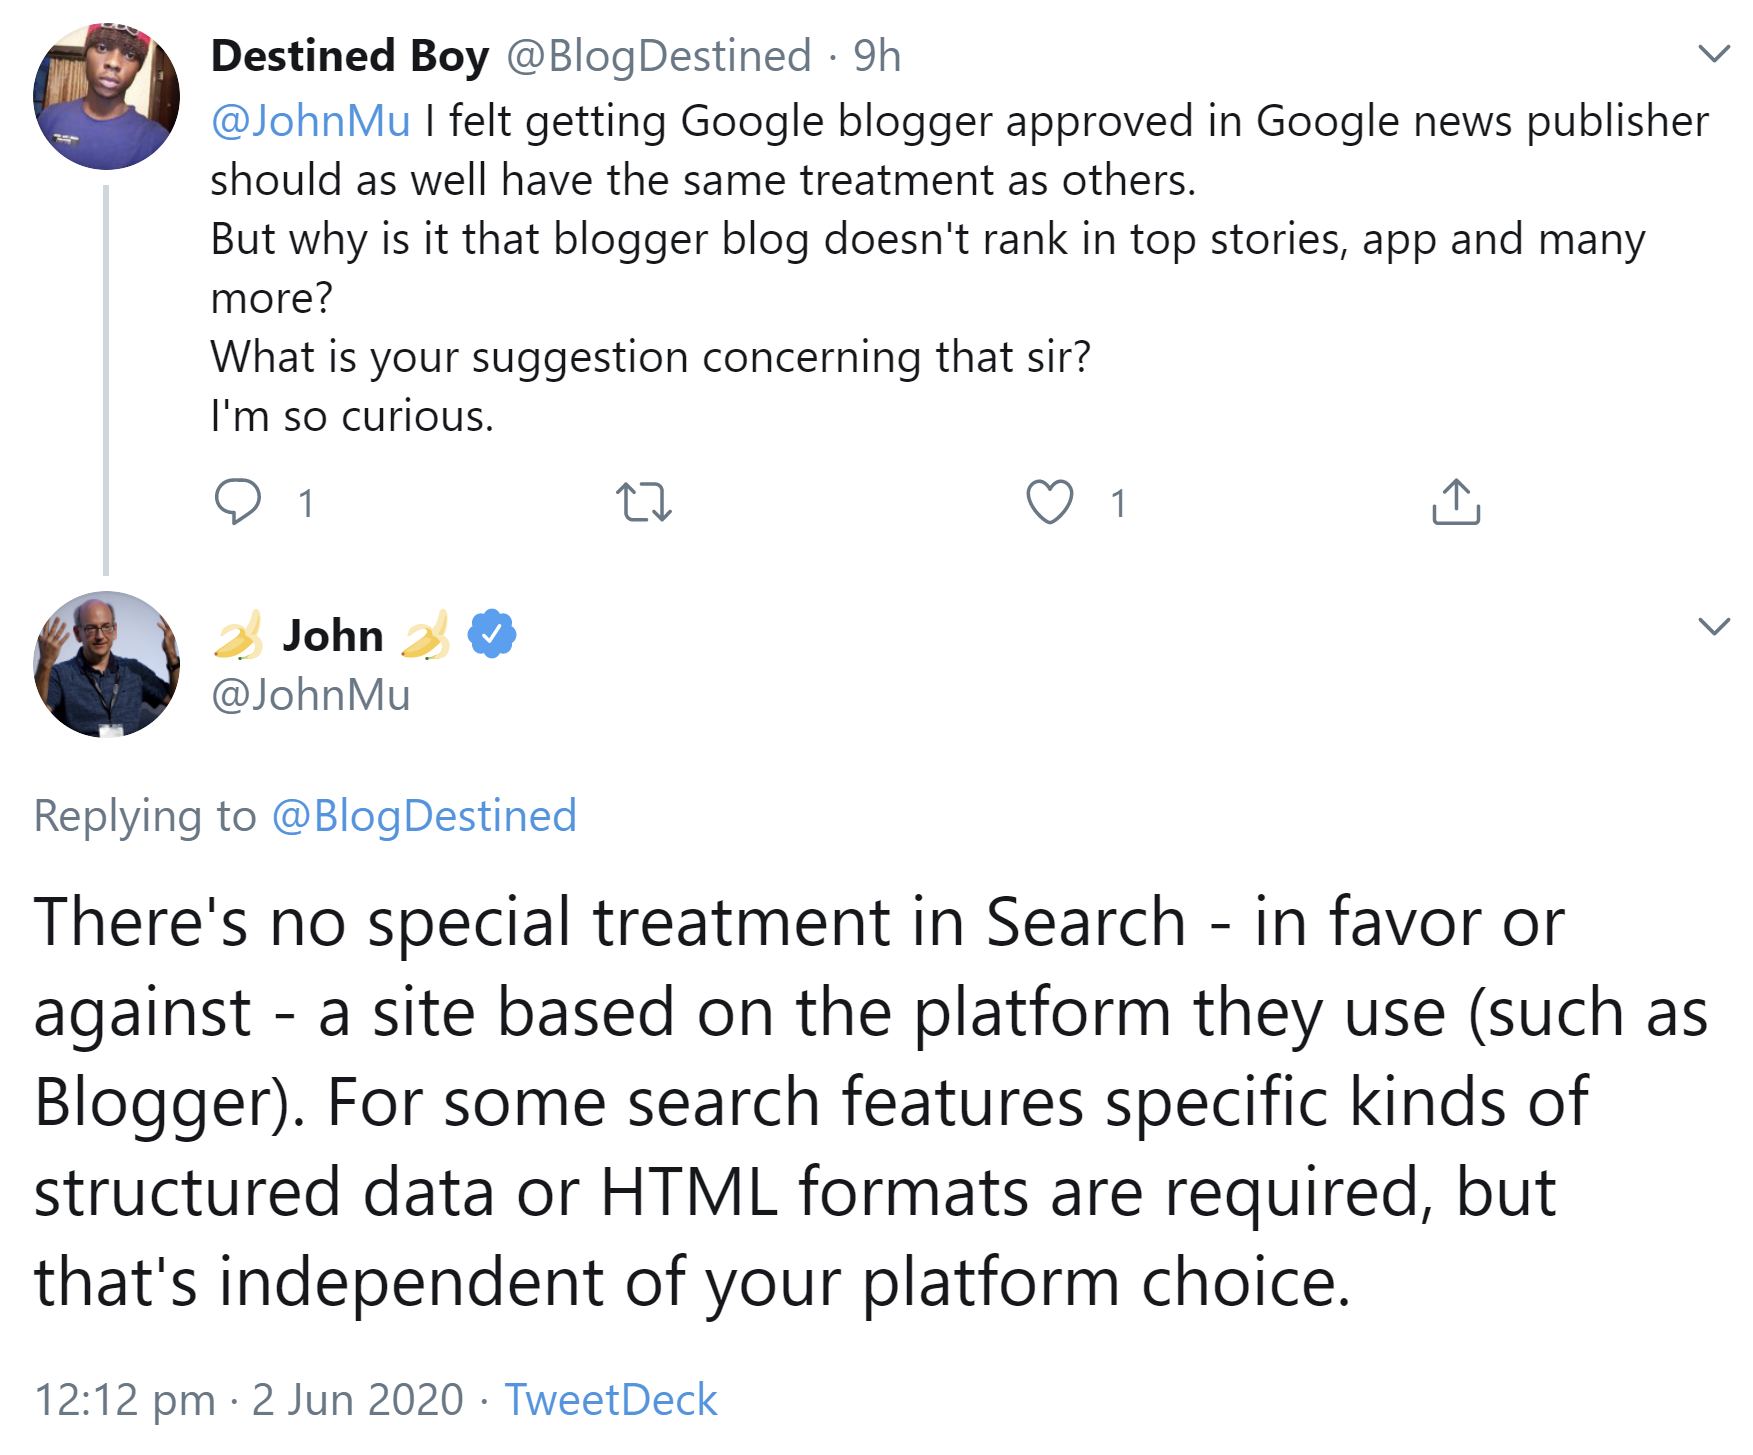 Google bevorzugt oder benachteiligt Websites nicht wegen der verwendeten Plattform